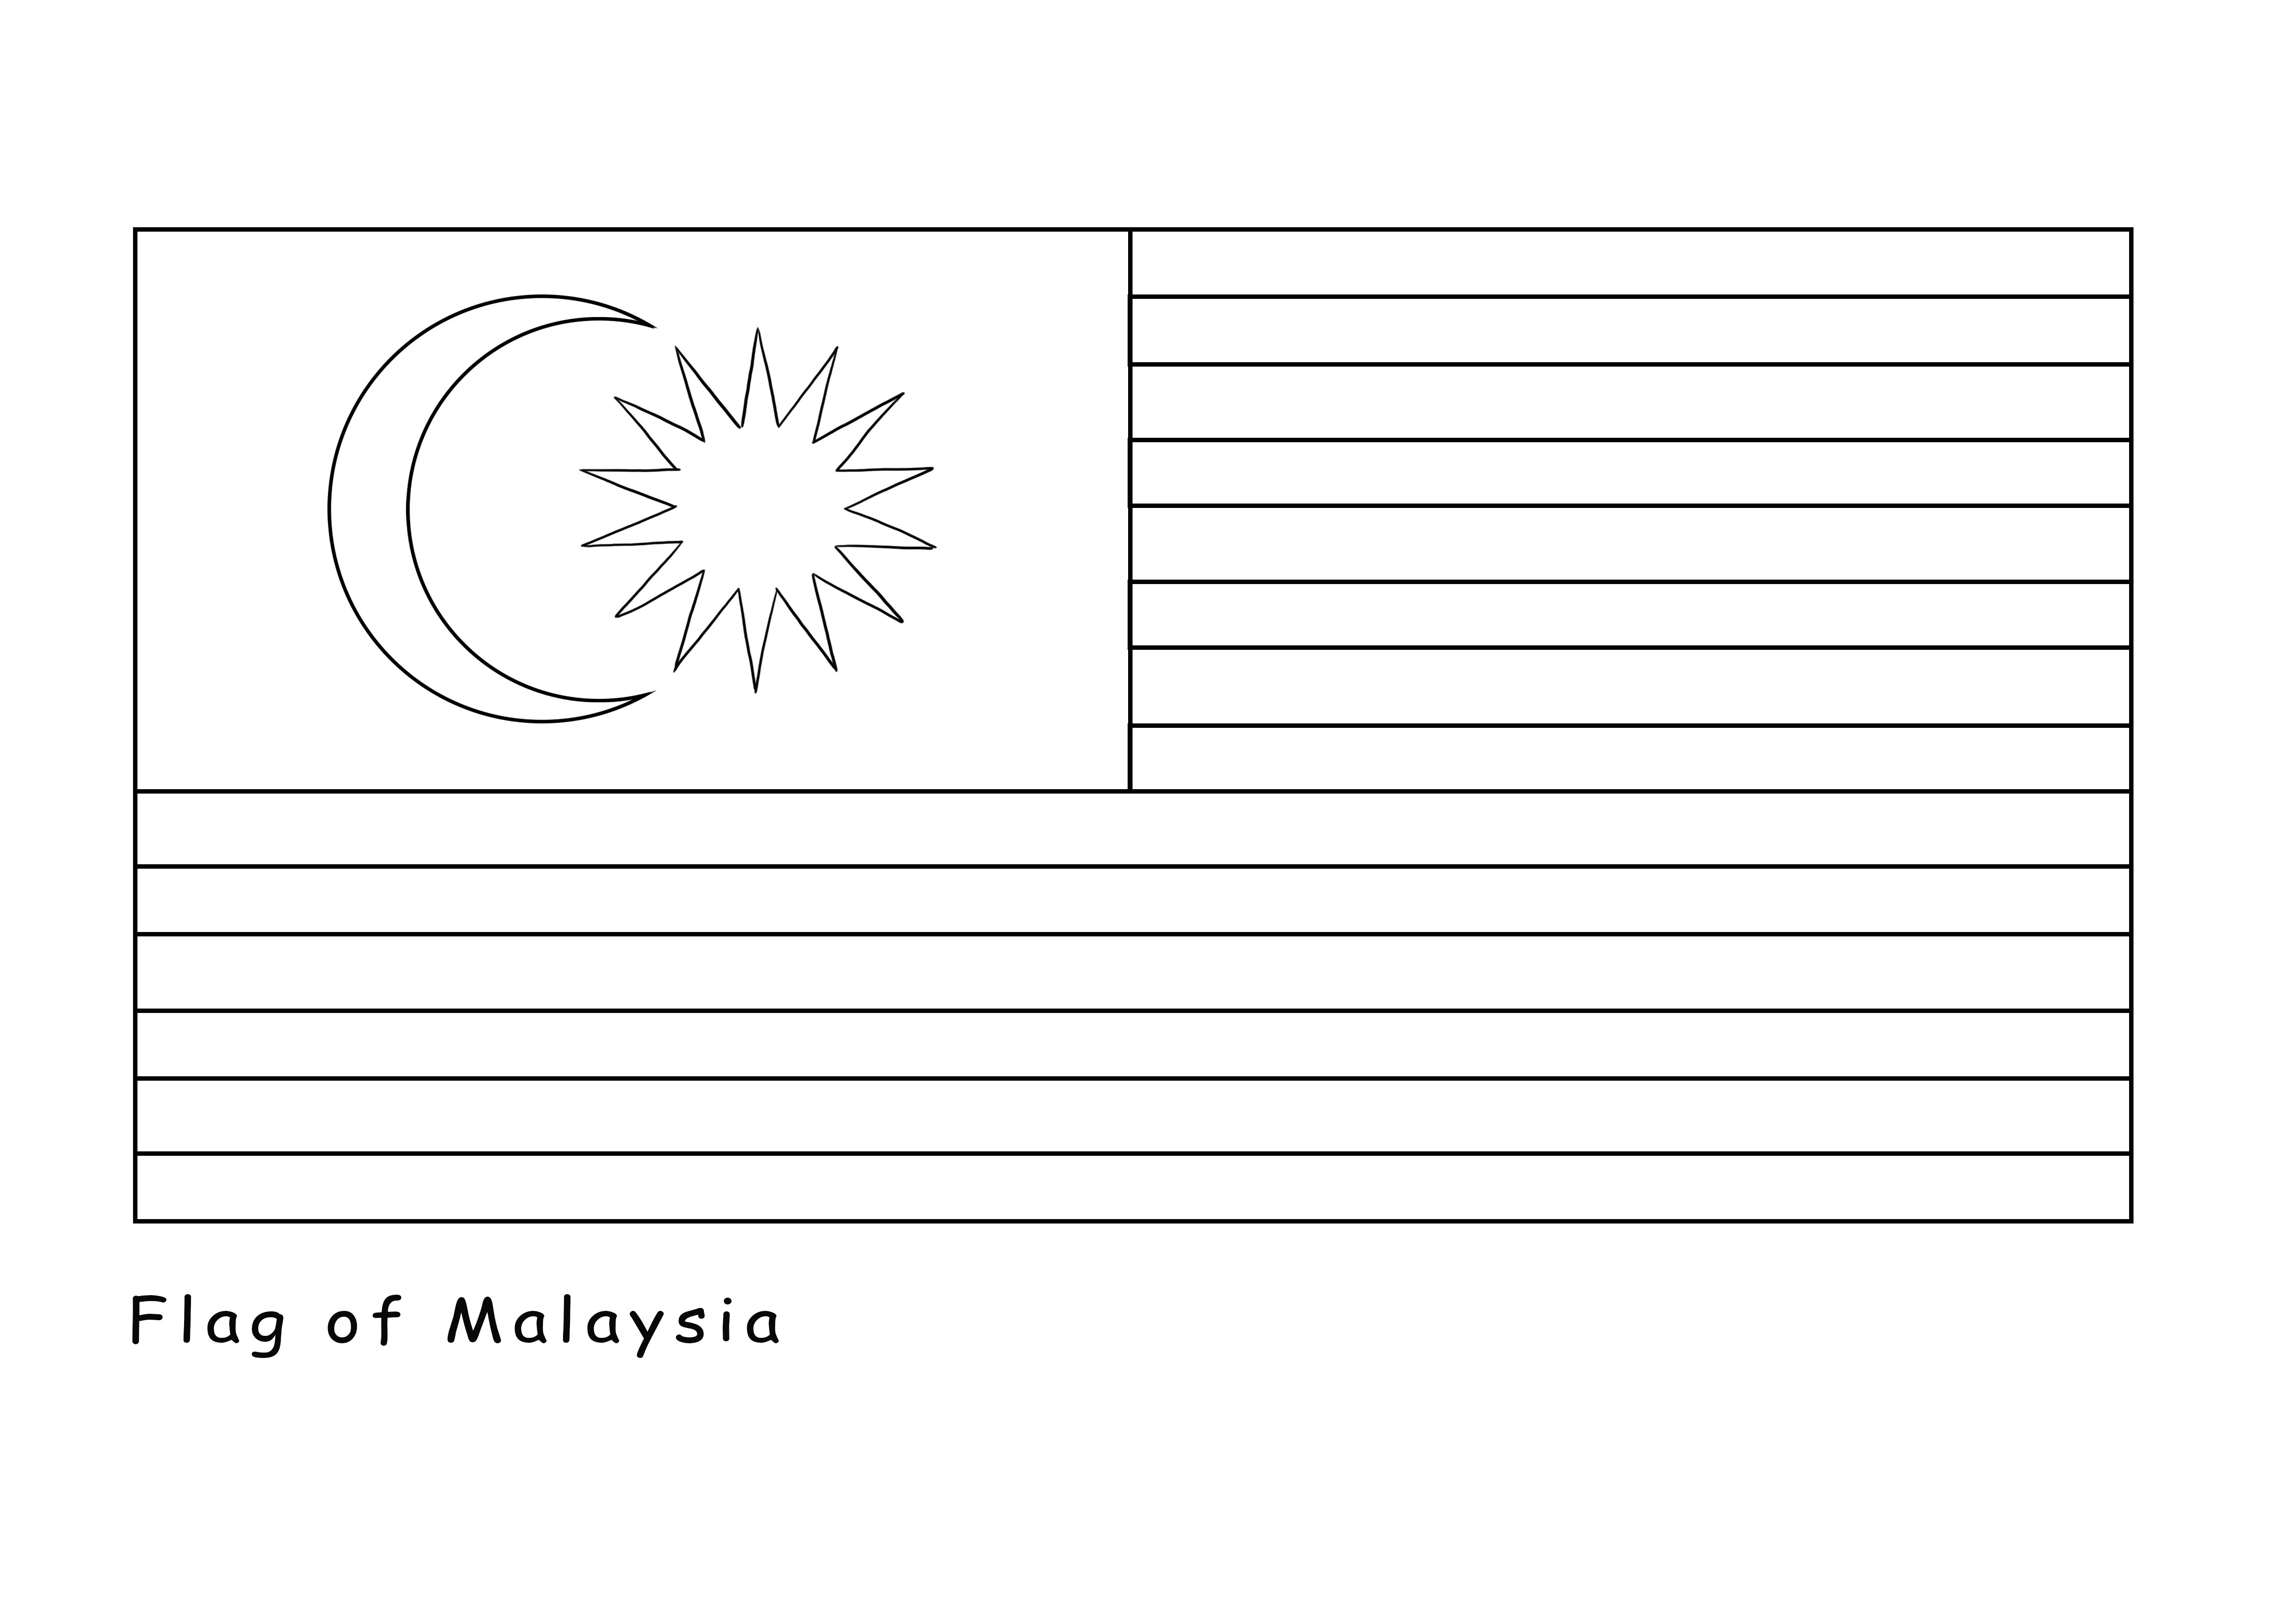 Gratis afdruk van de vlag van Maleisië wordt gratis aangeboden om te worden gekleurd kleurplaat